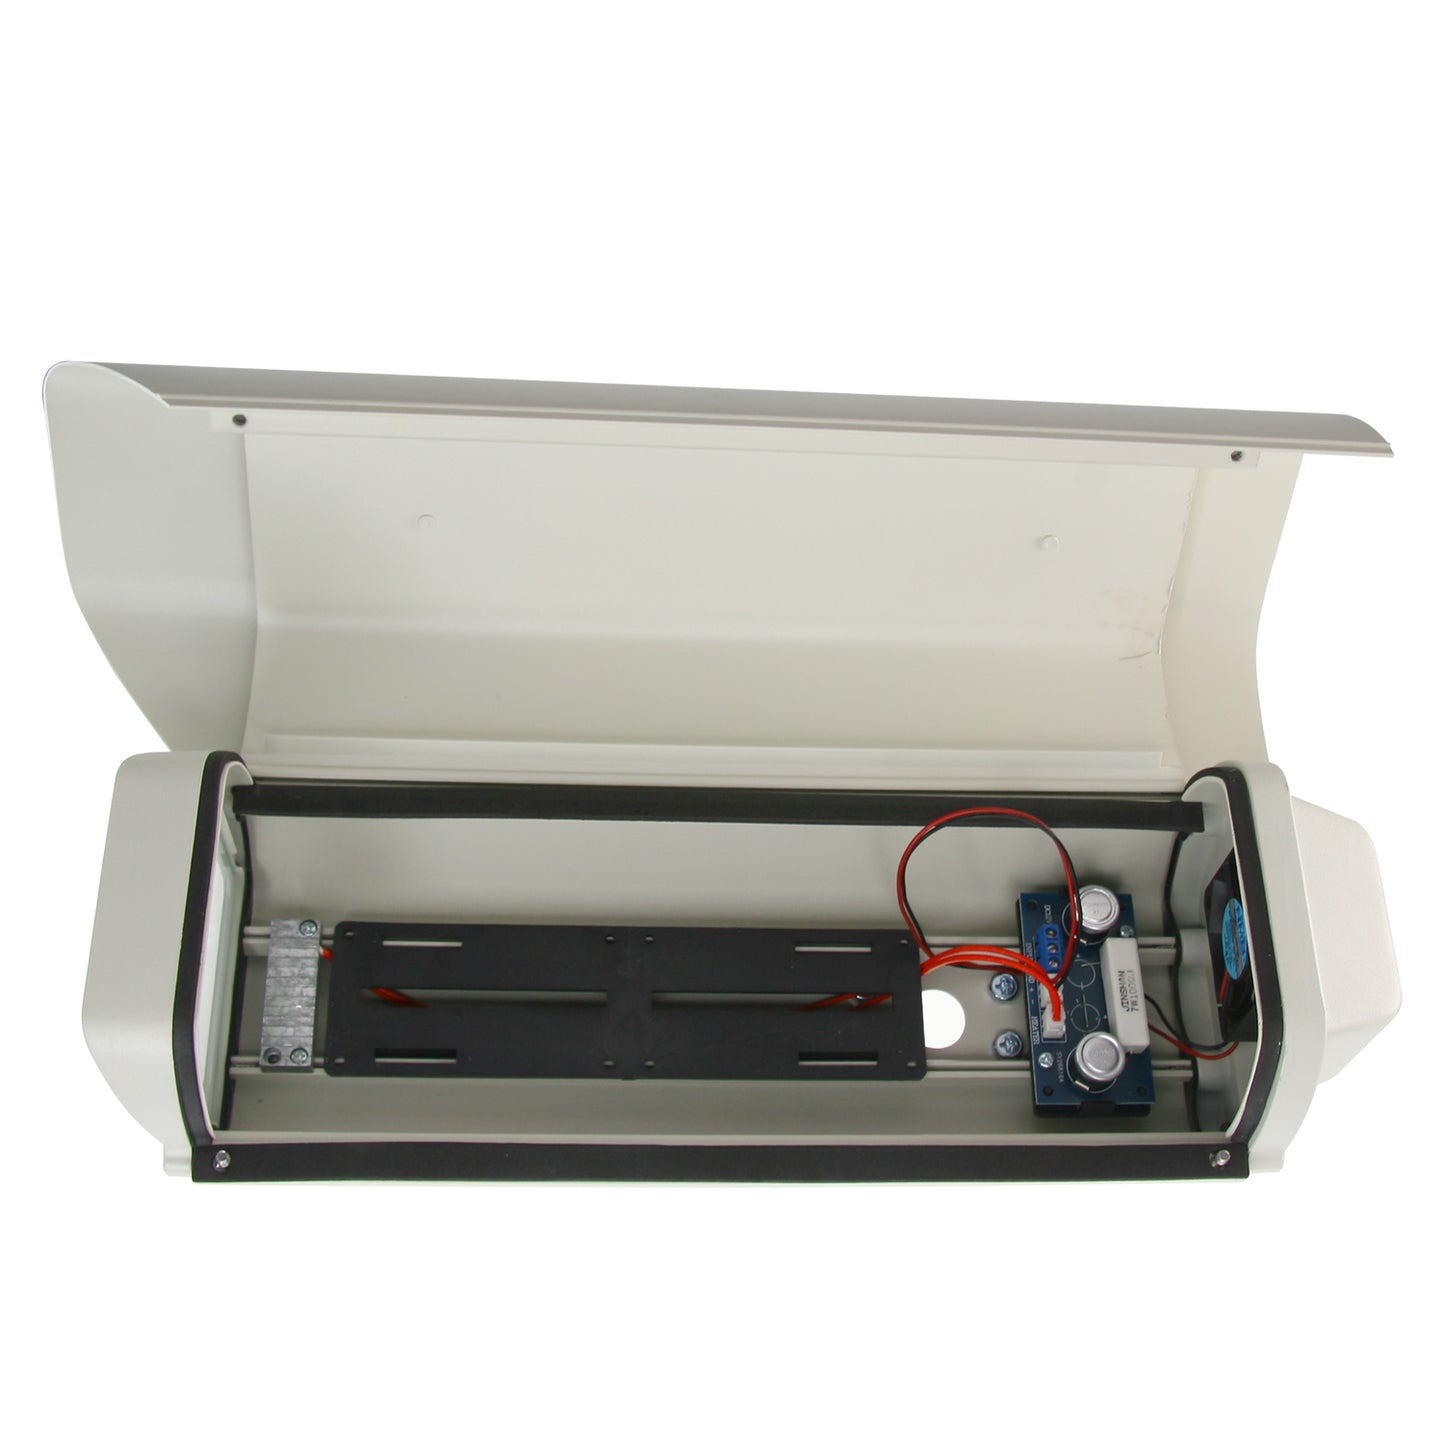 Box protettore - Lega di alluminio - Resistente all'acqua - Ventilazione e Riscaldamento DC 12 V - Staffa inclusa - Massima qualità e protezione